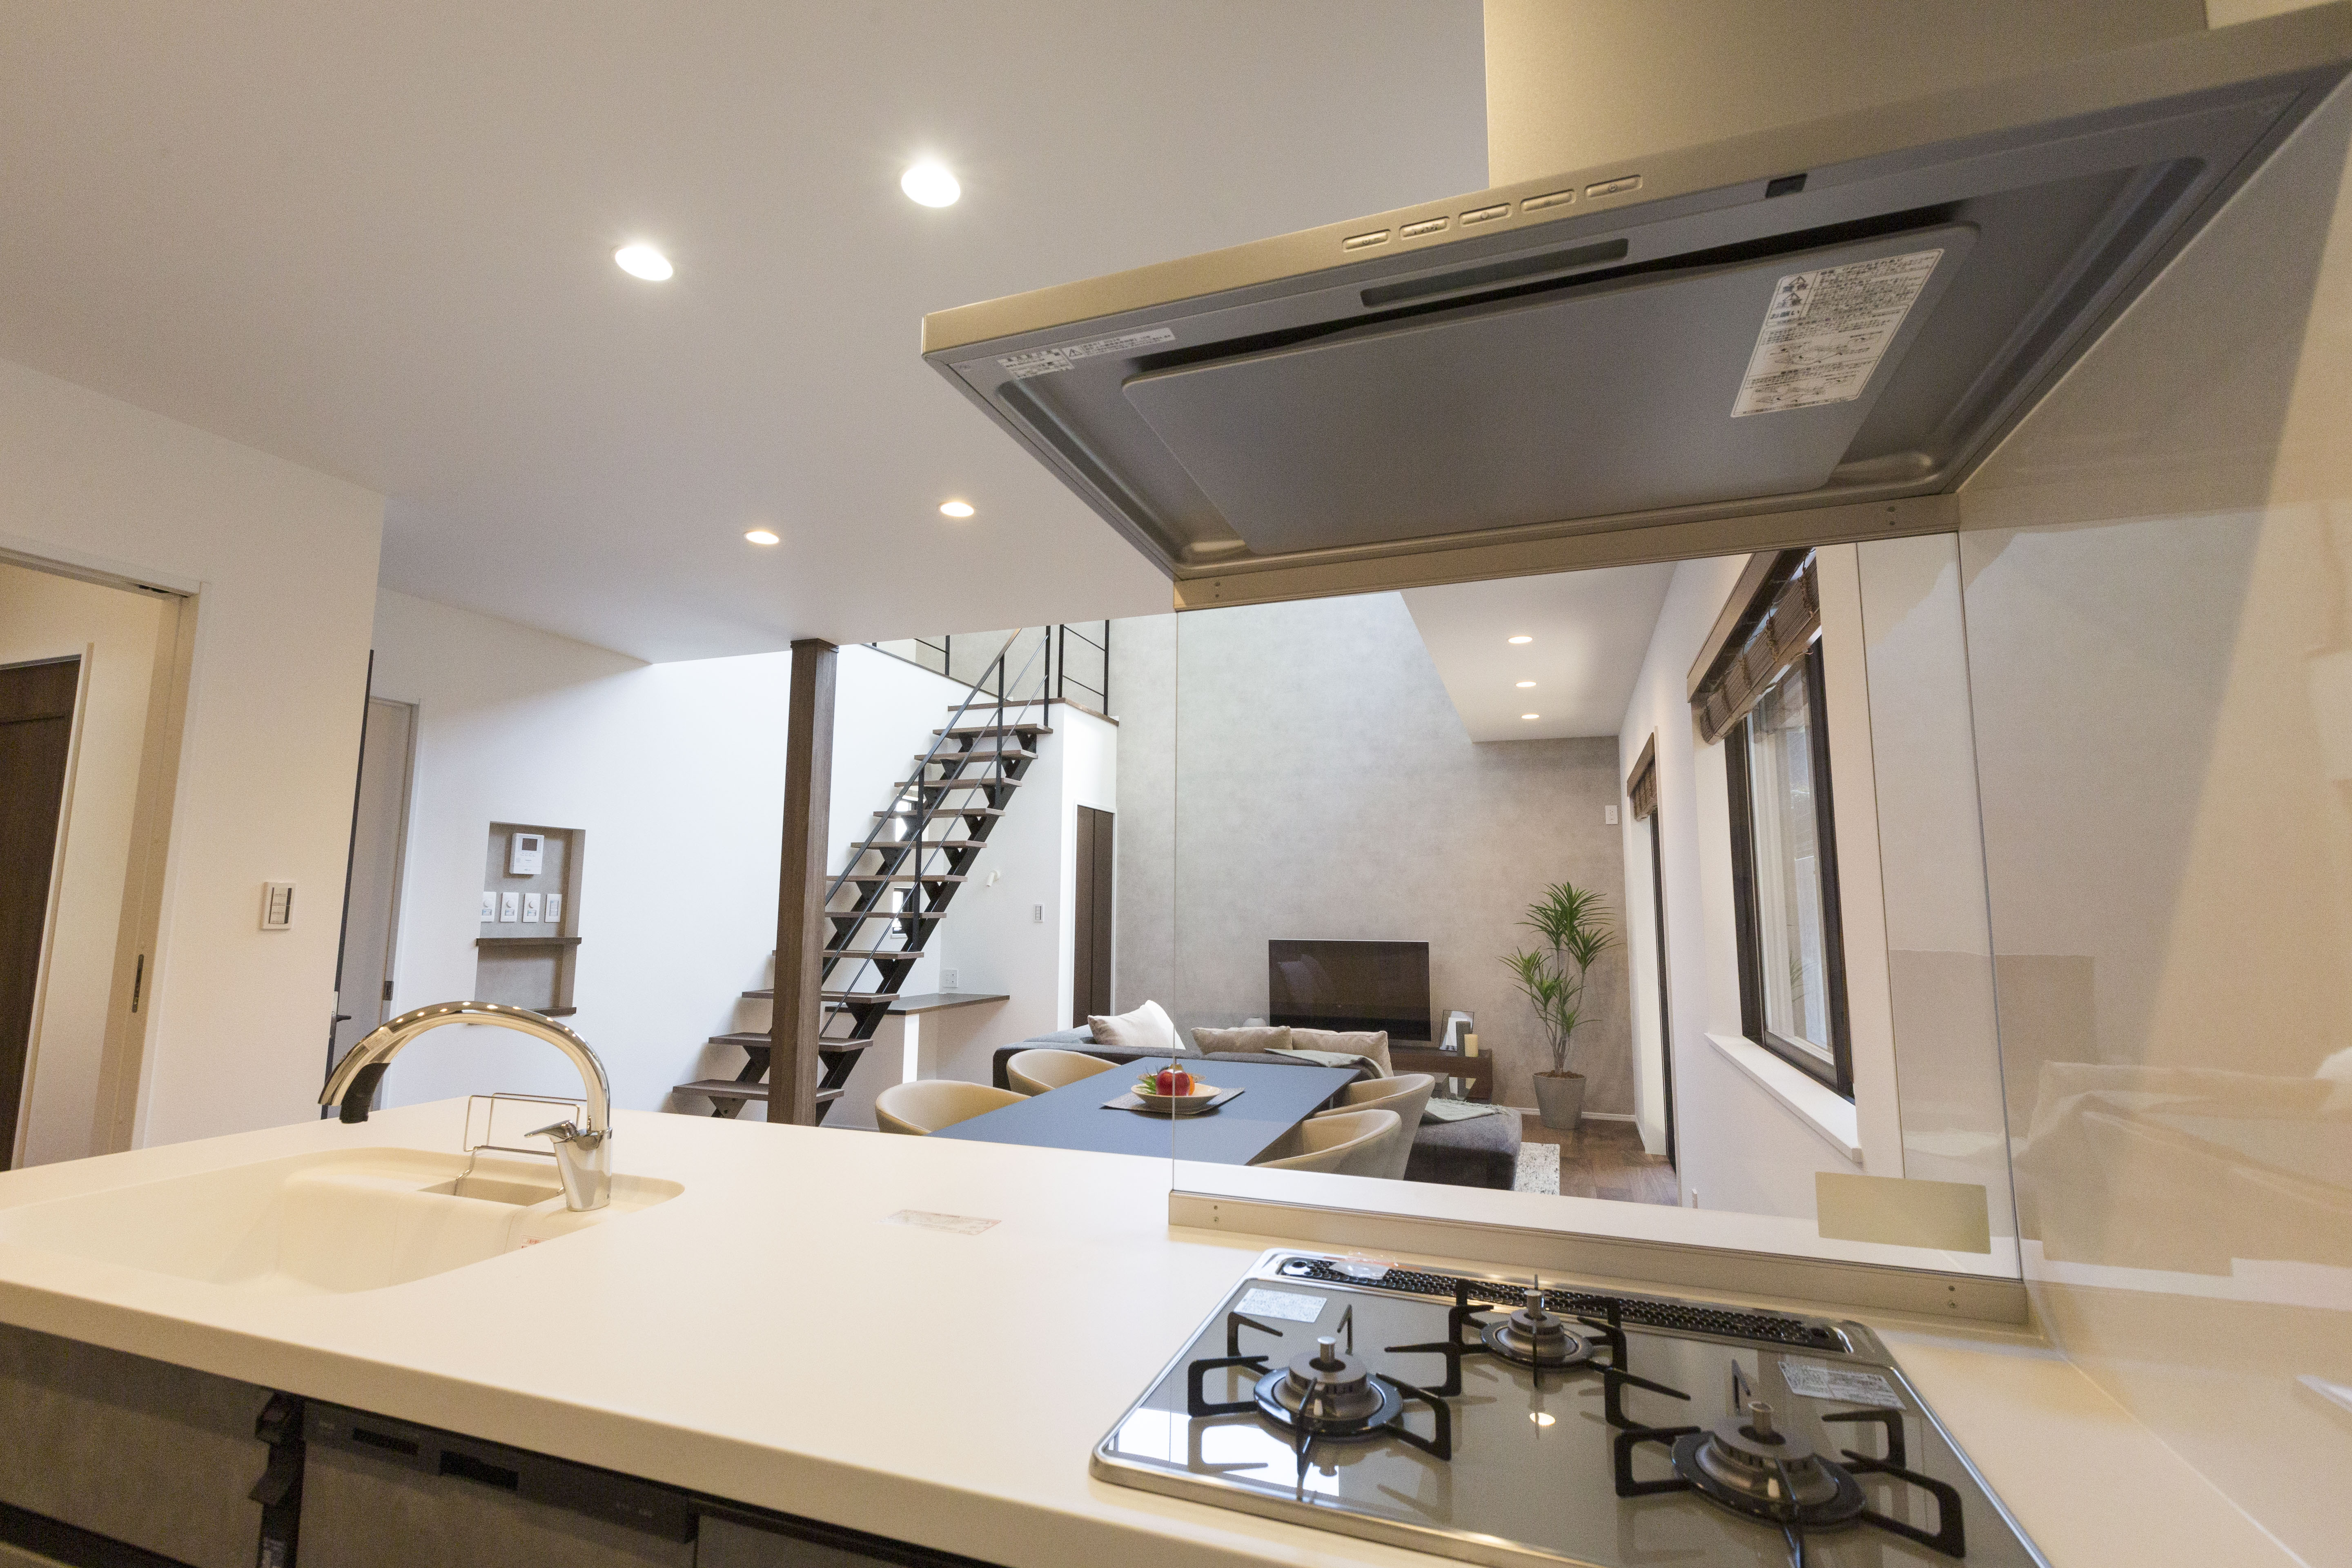 《ハンズフリー水栓、食洗機（深型）、キッチンコンセント》オープンで開放感のある空間にすることができるペニンシュラ型キッチン。住まいと暮らしに フィットするデザイン性。